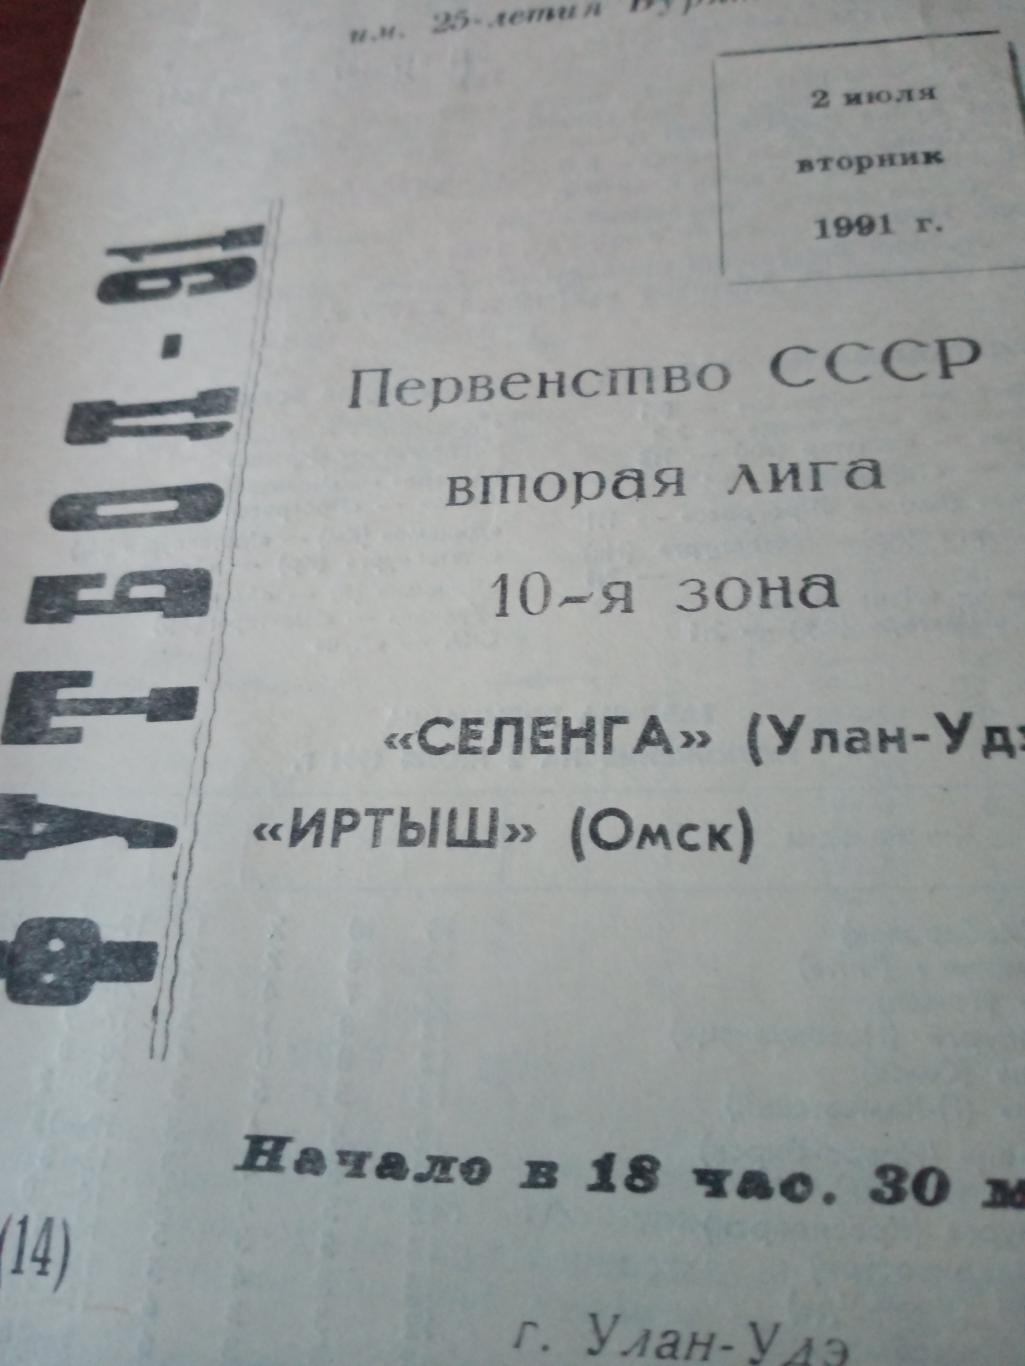 Селенга Улан-Удэ - Иртыш Омск. 2 июля 1991 год